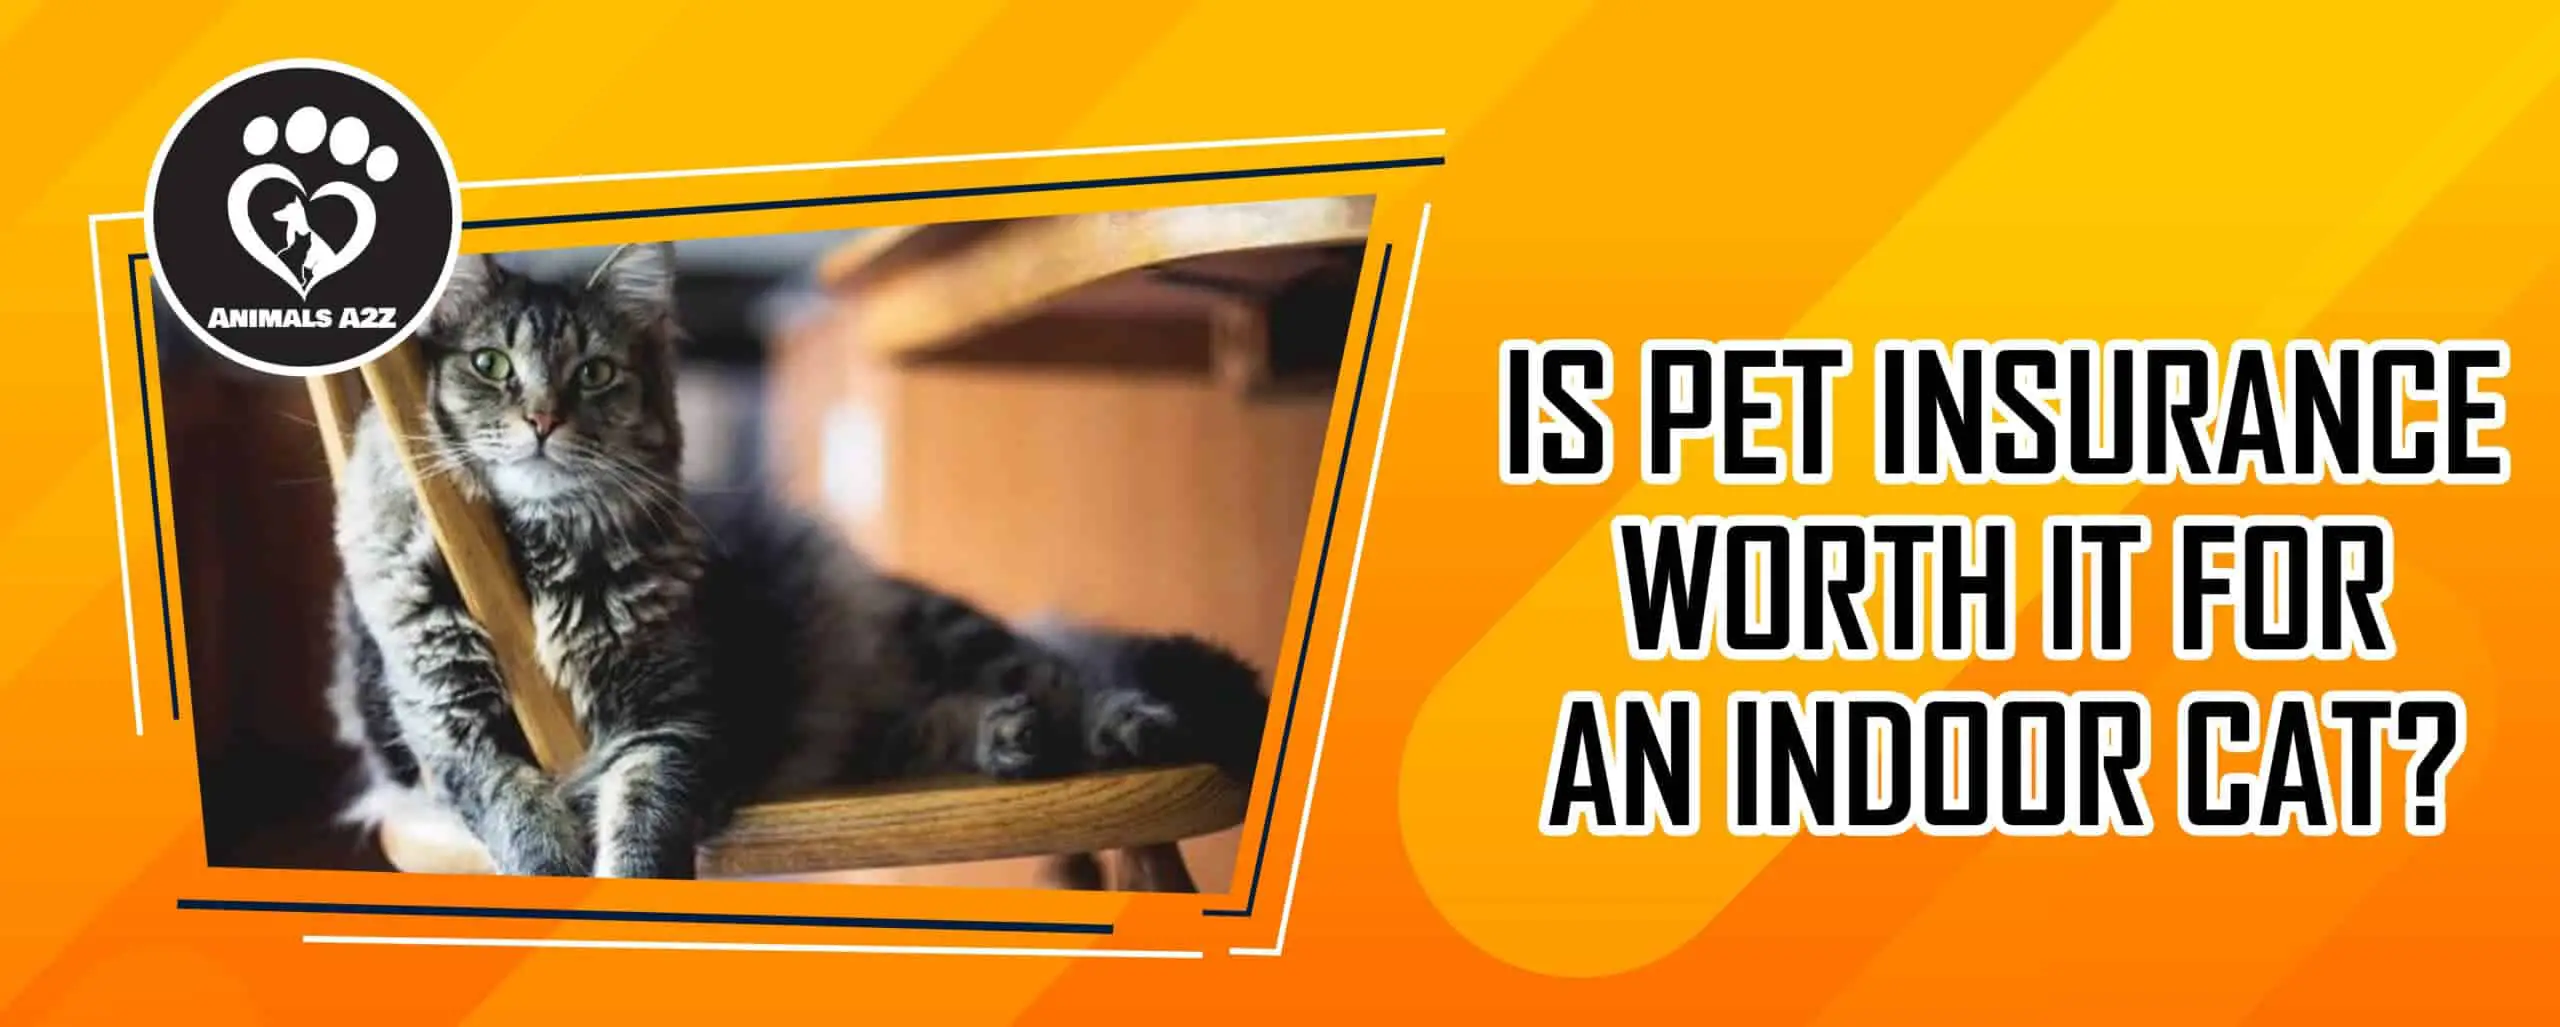 Er dyreforsikring det værd at tegne en dyreforsikring for en indendørs kat?